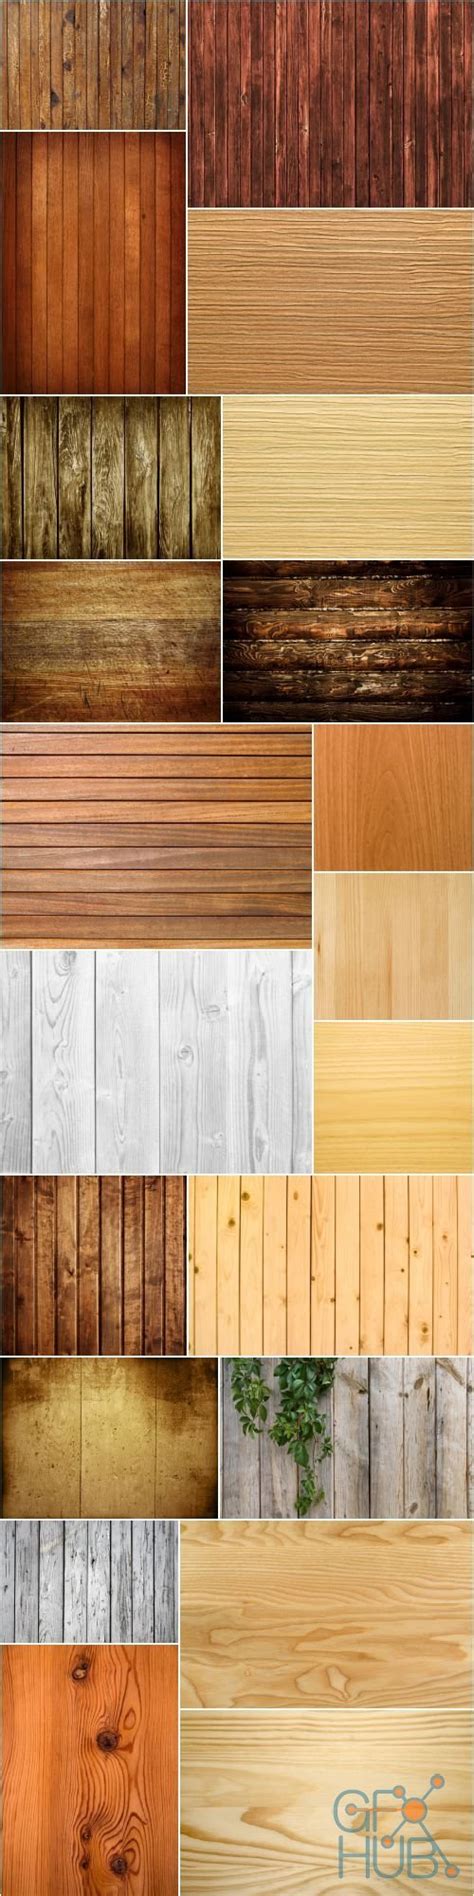 Shutterstock Wood Textures Gfx Hub